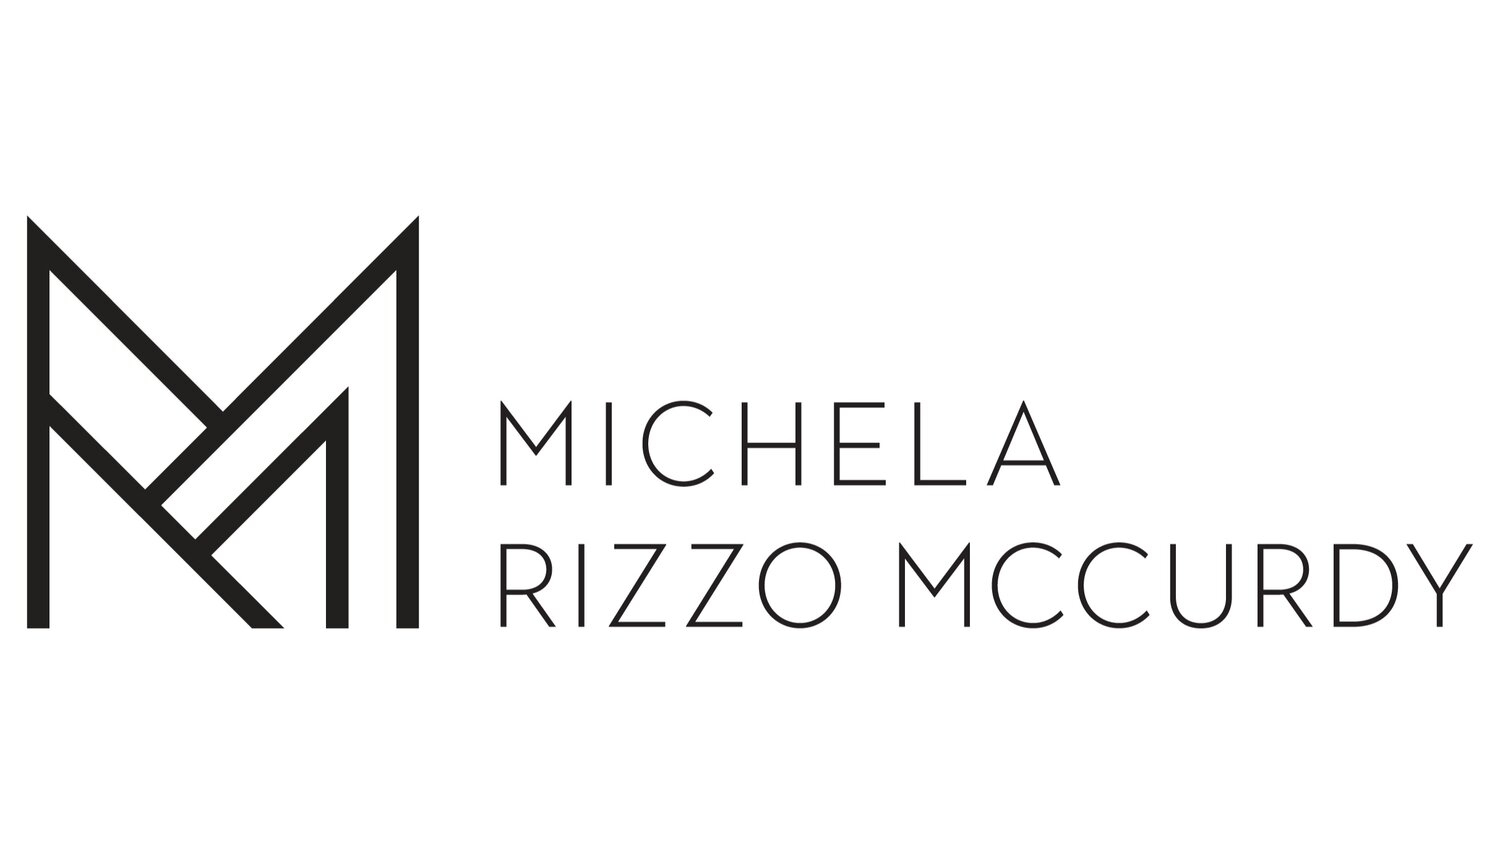 MICHELA RIZZO MCCURDY